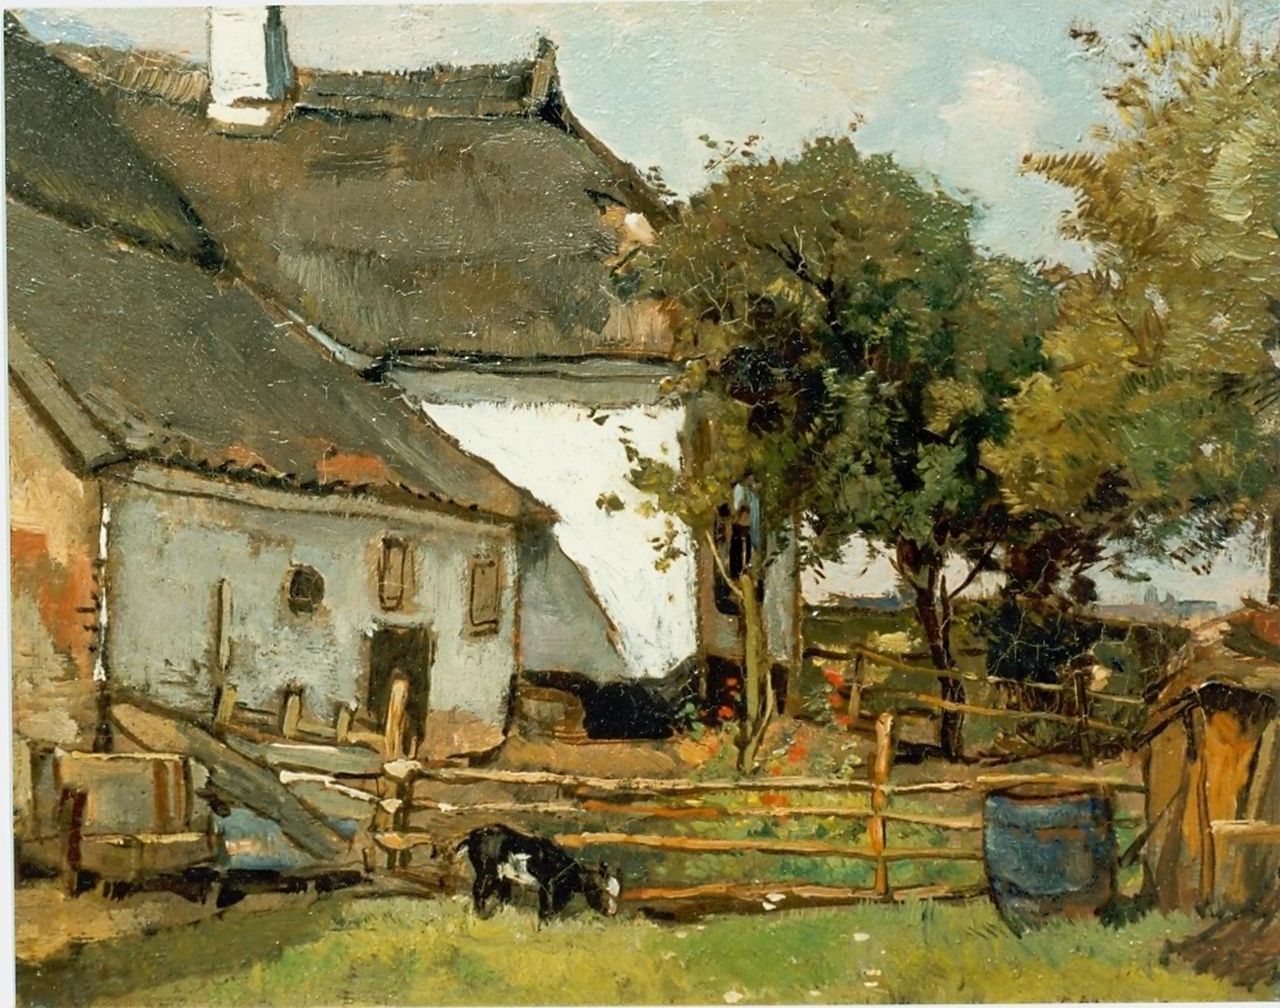 Akkeringa J.E.H.  | 'Johannes Evert' Hendrik Akkeringa, A farm, oil on canvas 21.0 x 27.0 cm, signed l.r.